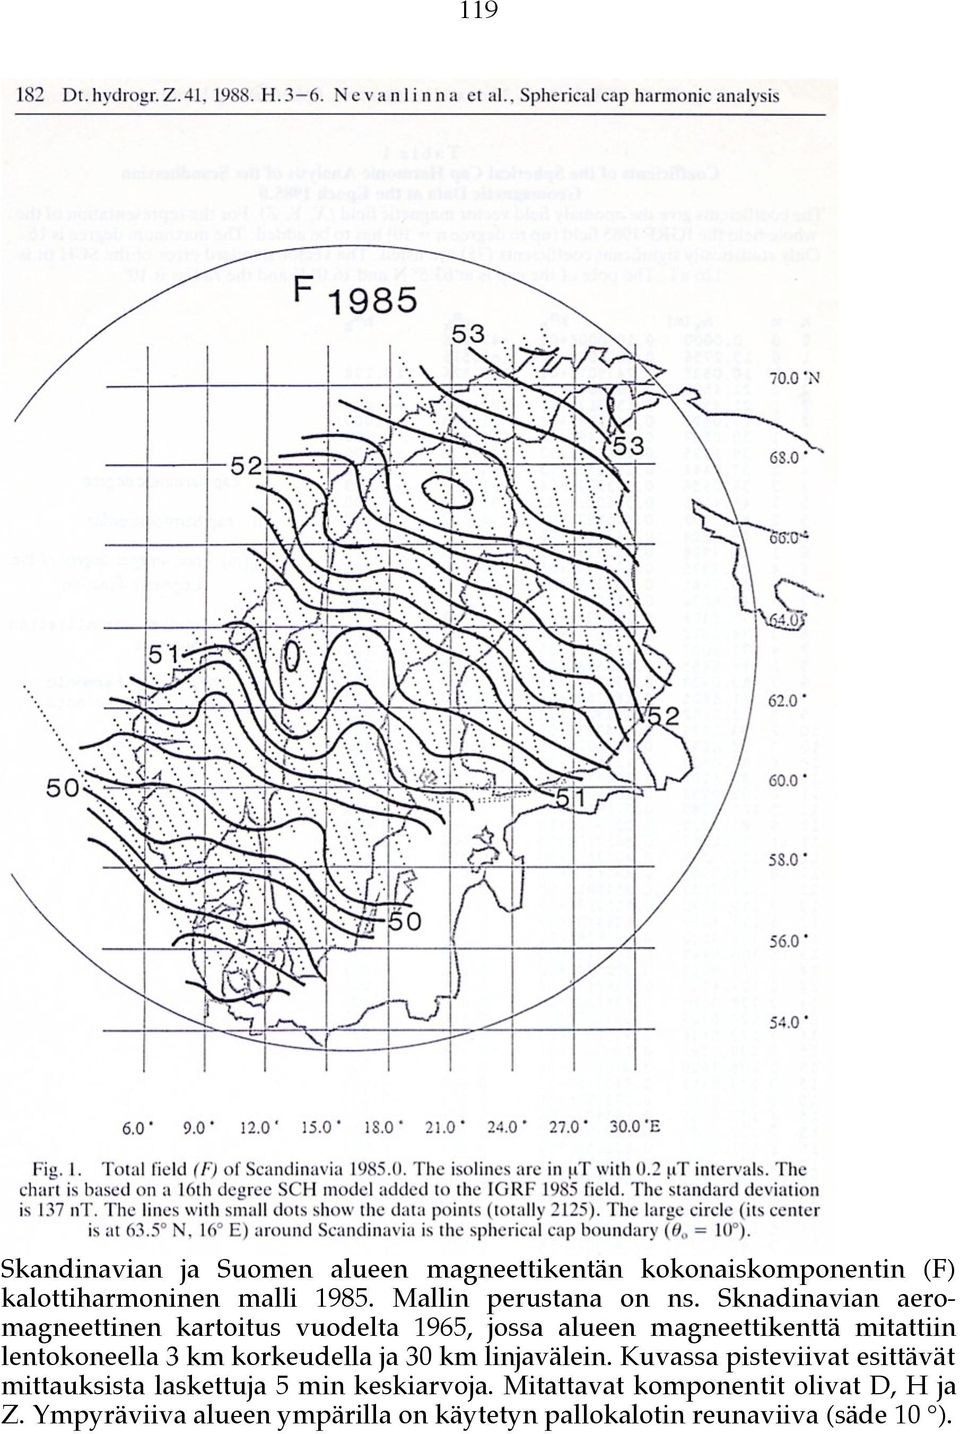 Sknadinavian aeromagneettinen kartoitus vuodelta 1965, jossa alueen magneettikenttä mitattiin lentokoneella 3 km